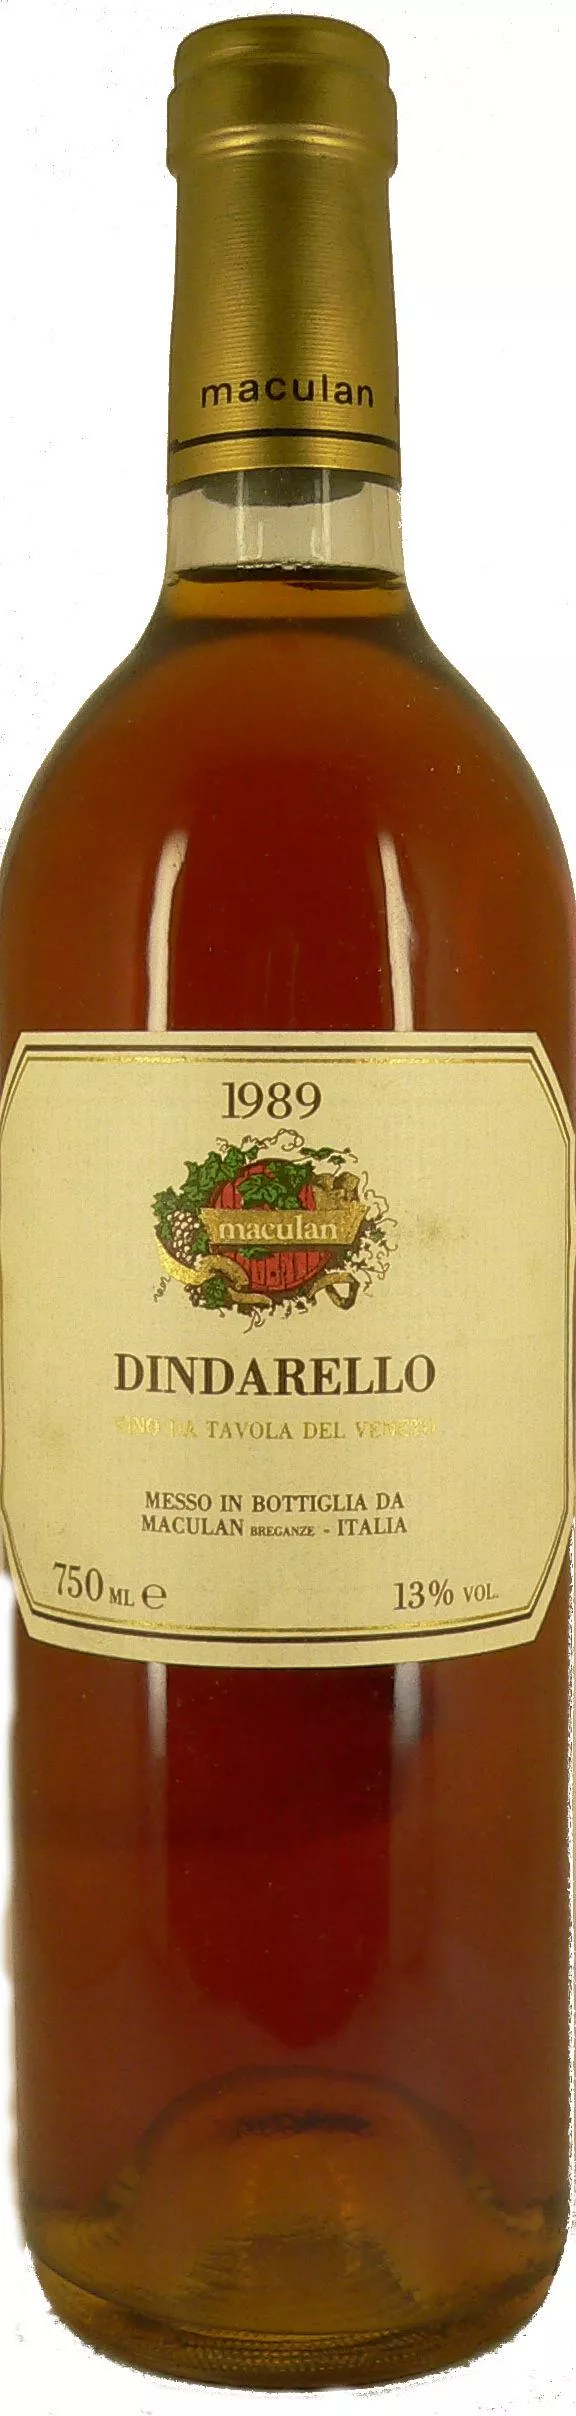 1989 Dindarello Muscat